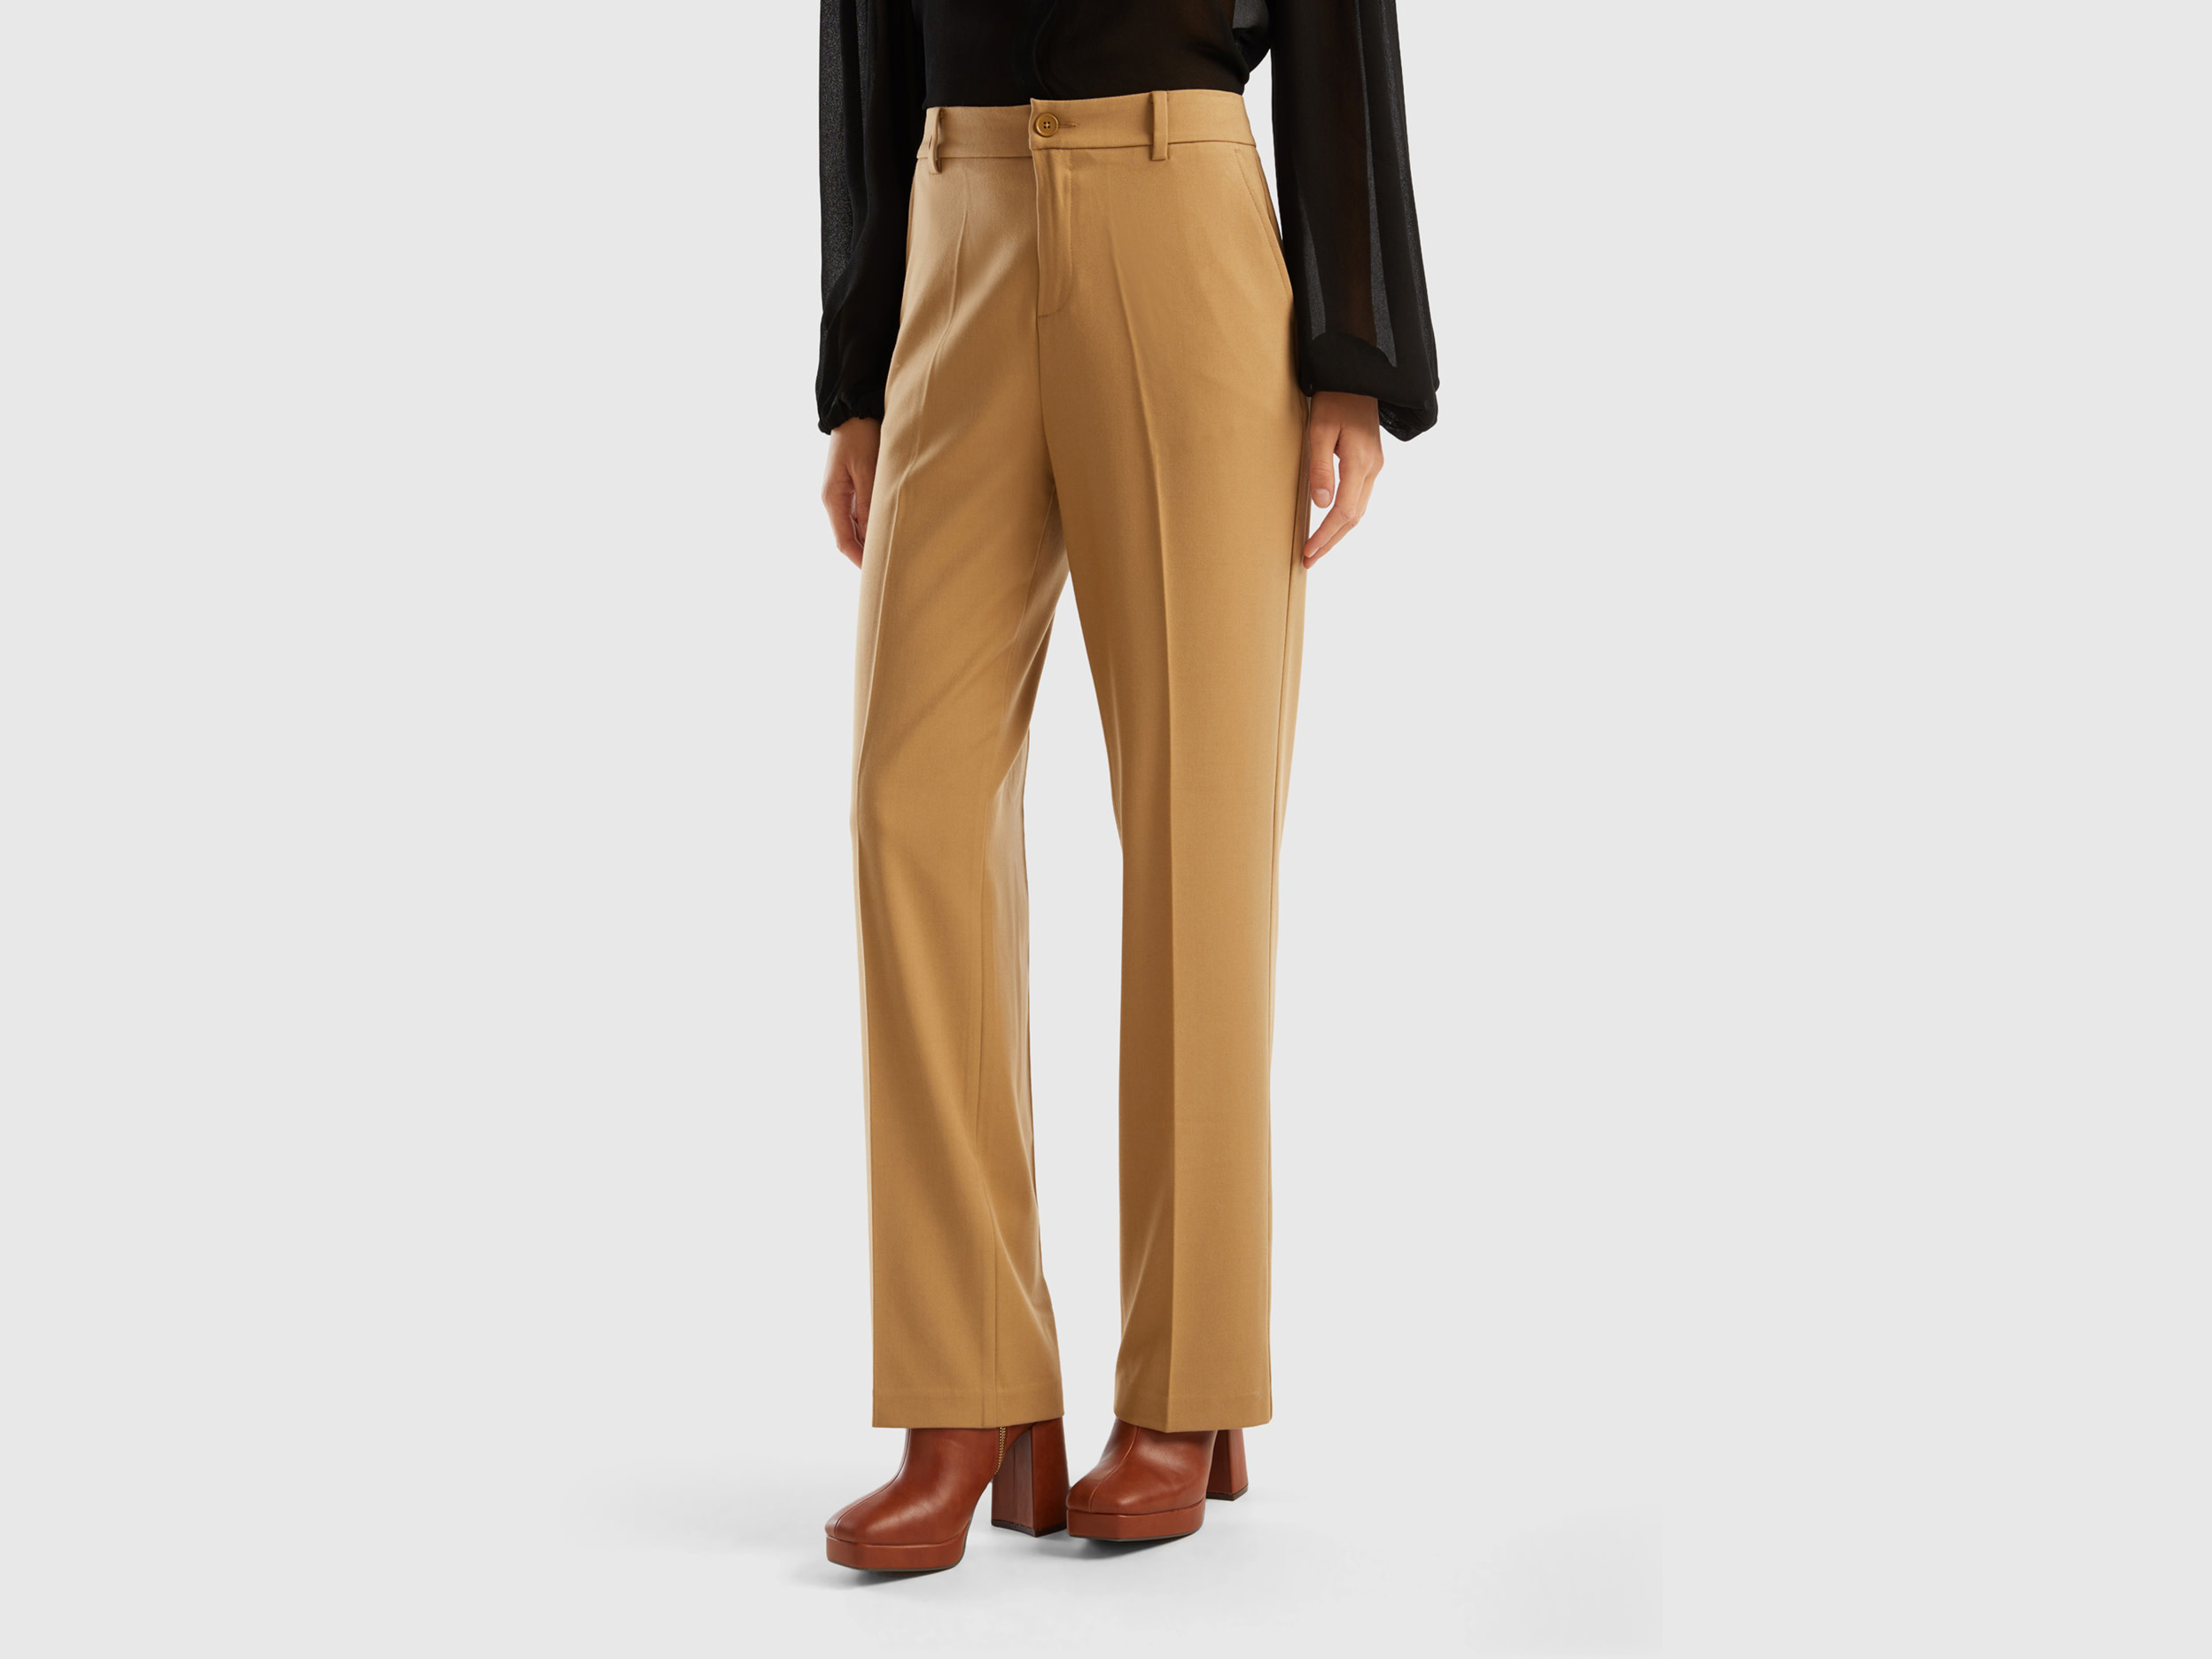 Benetton, Warm Flannel Trousers, size 10, Camel, Women